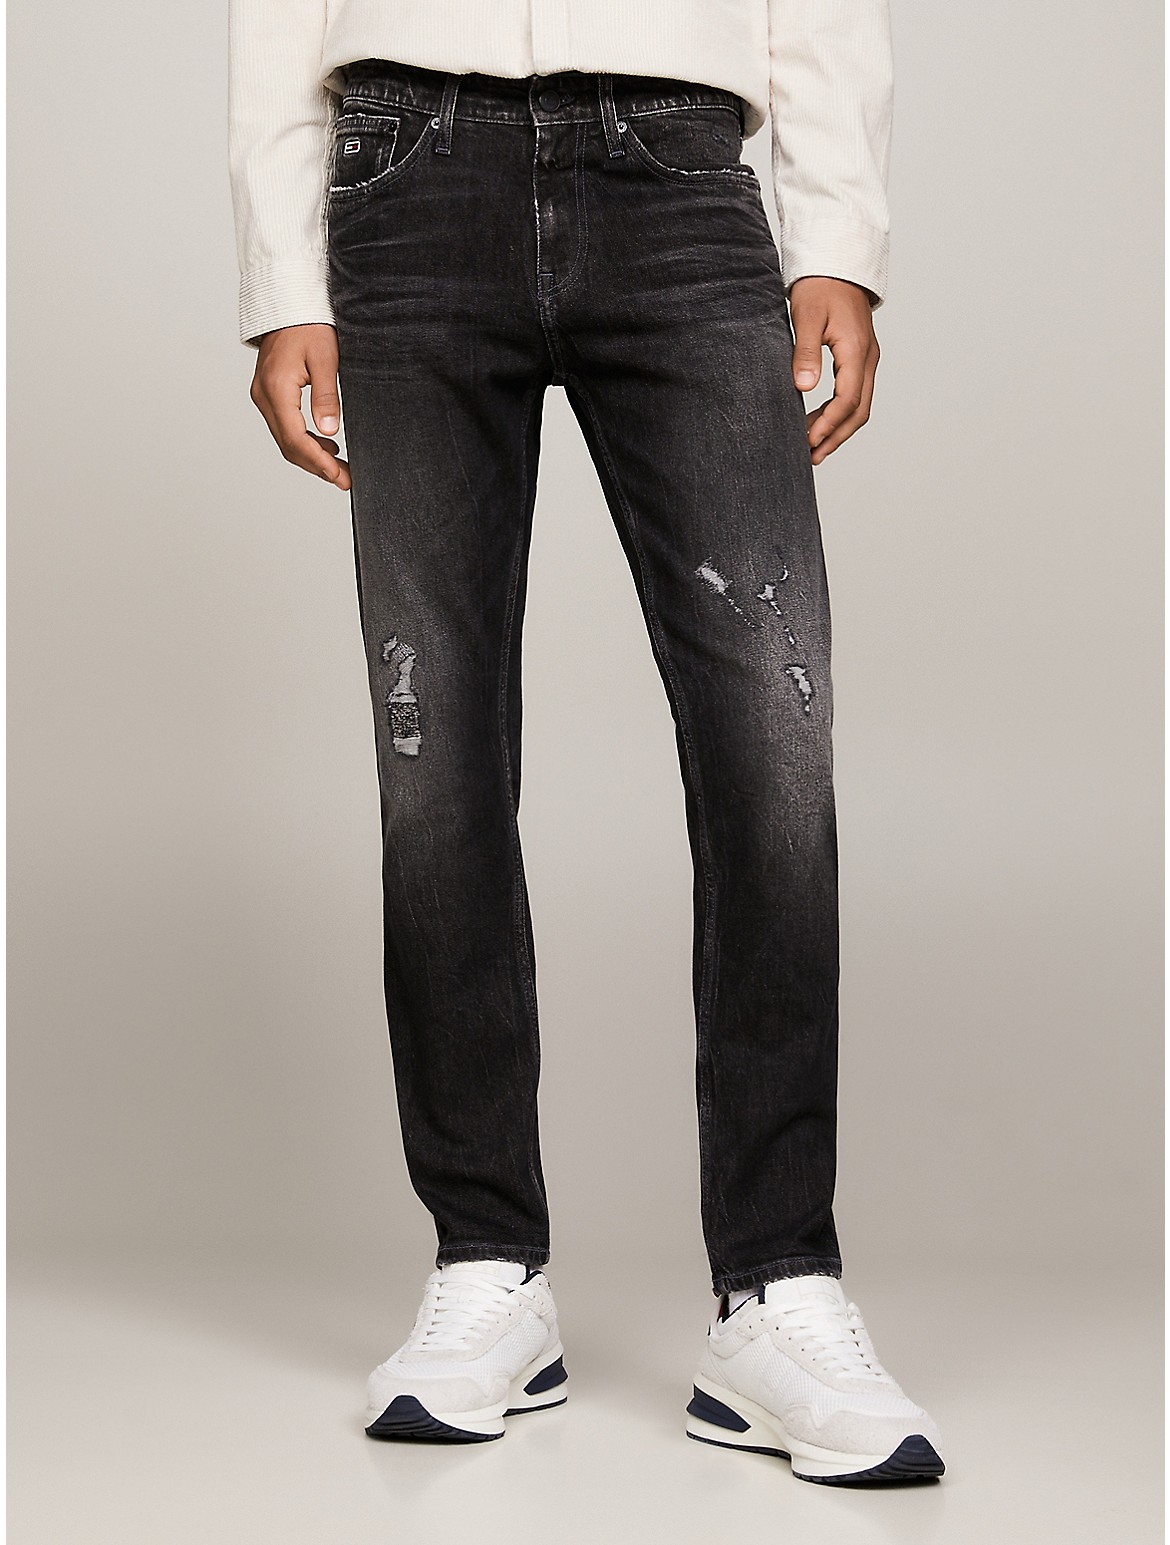 Tommy Hilfiger Men's Slim Fit Tapered Dark Wash Jean